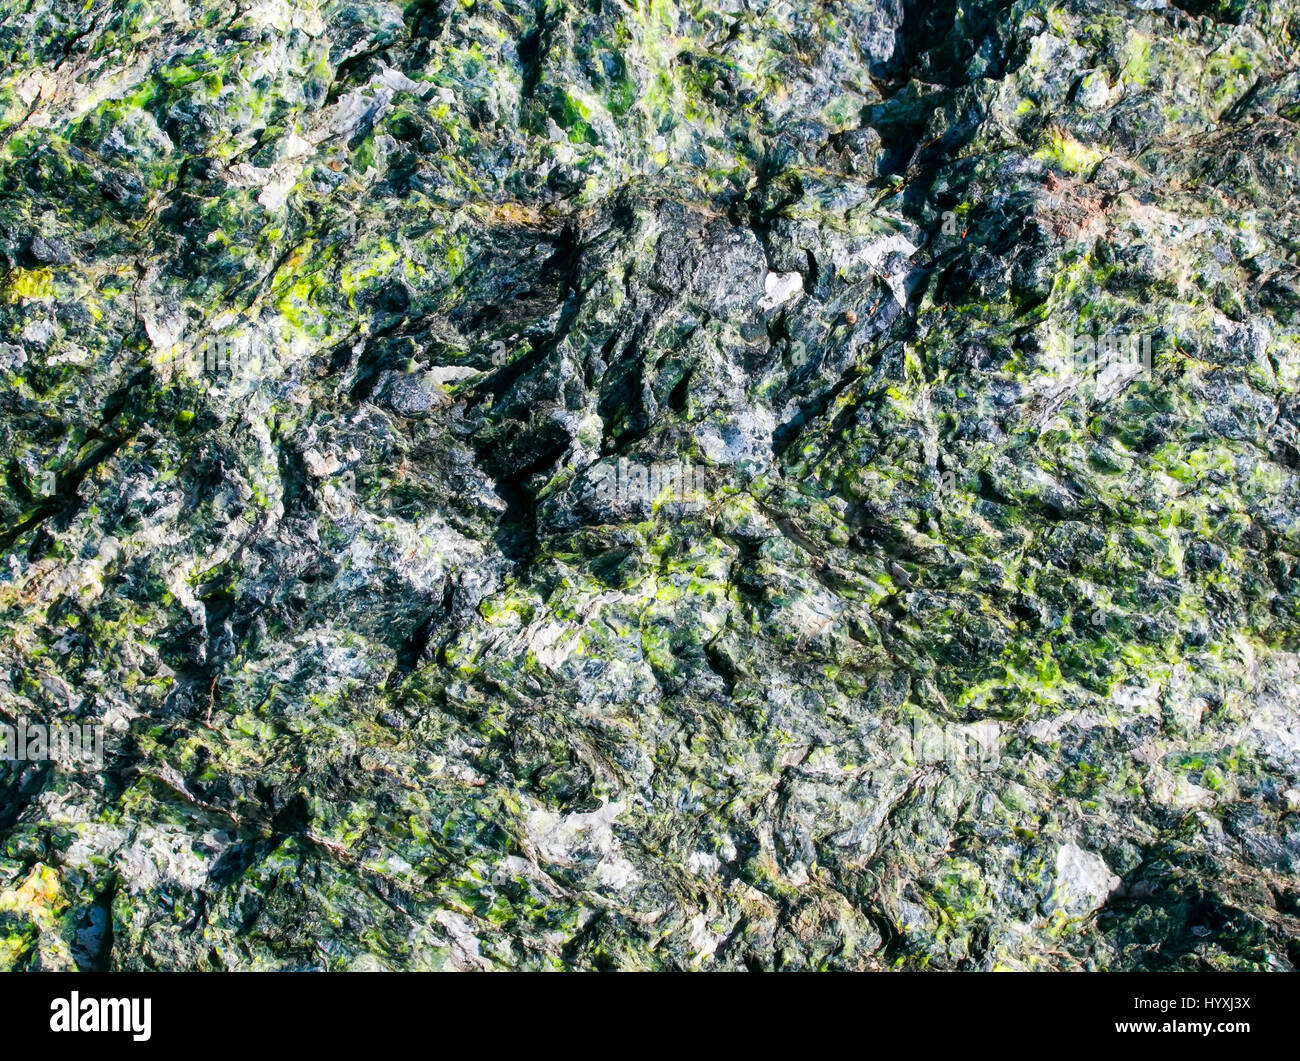 La hermosa textura de las piedras en bruto con el verde esmeralda de inclusiones y diversas fosas y tubérculos Foto de stock